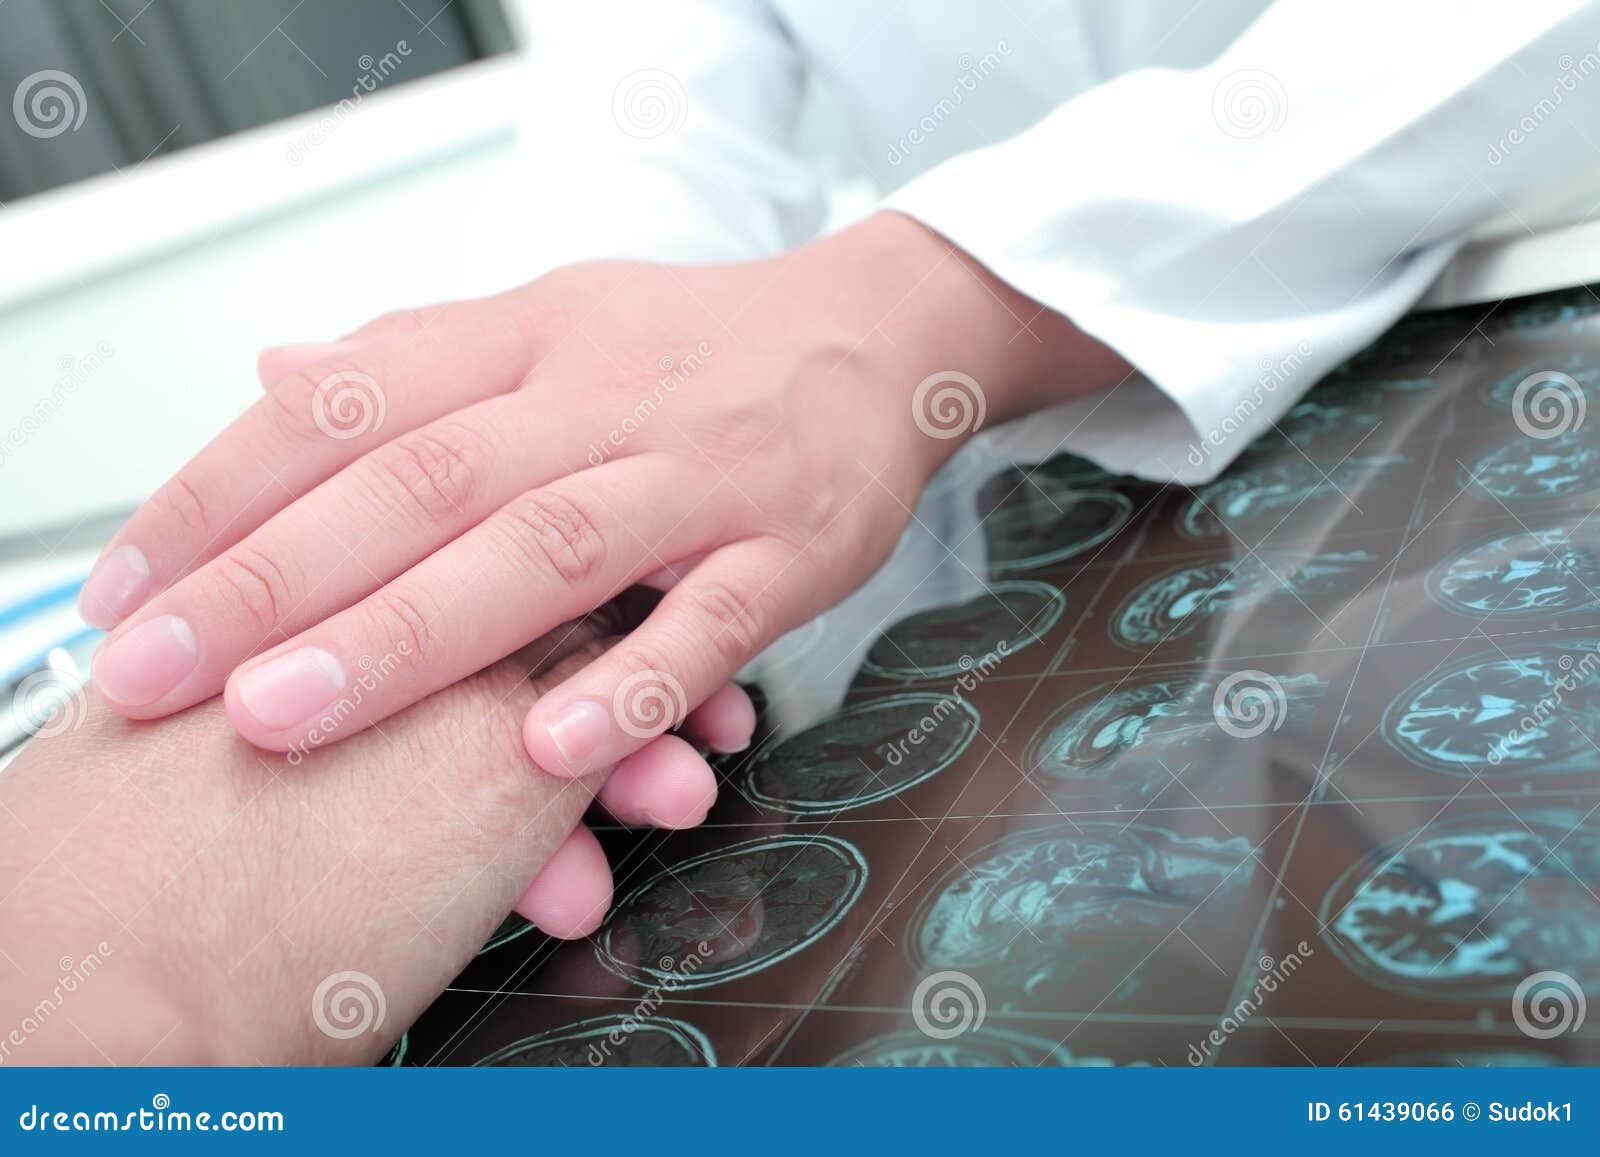 doctor keeps hands of his patient